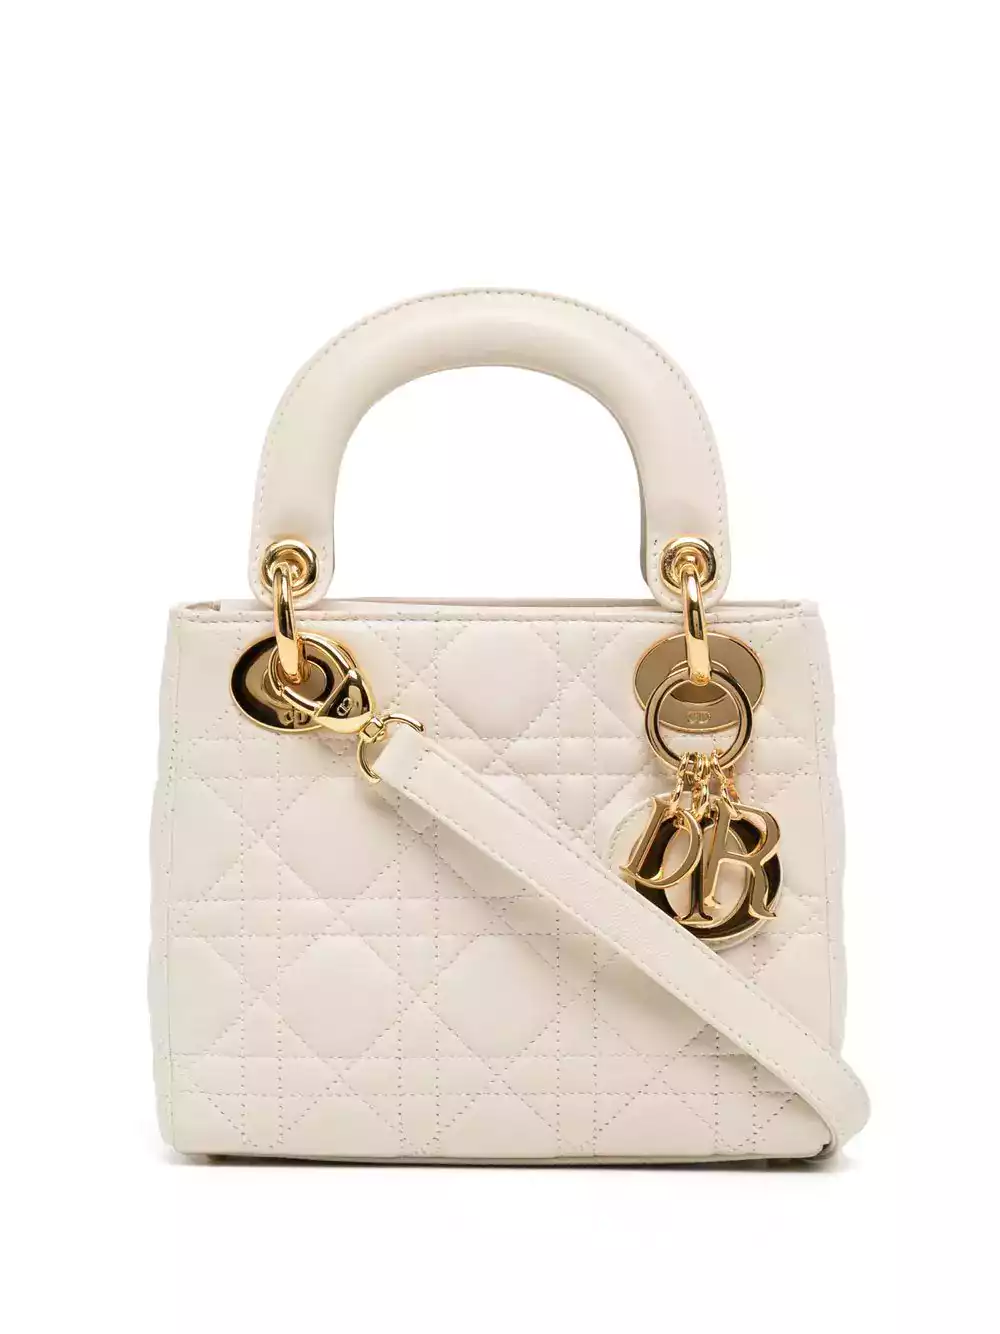 Sac Dior Lady blanc et or - Location de sacs de luxe sur welPop